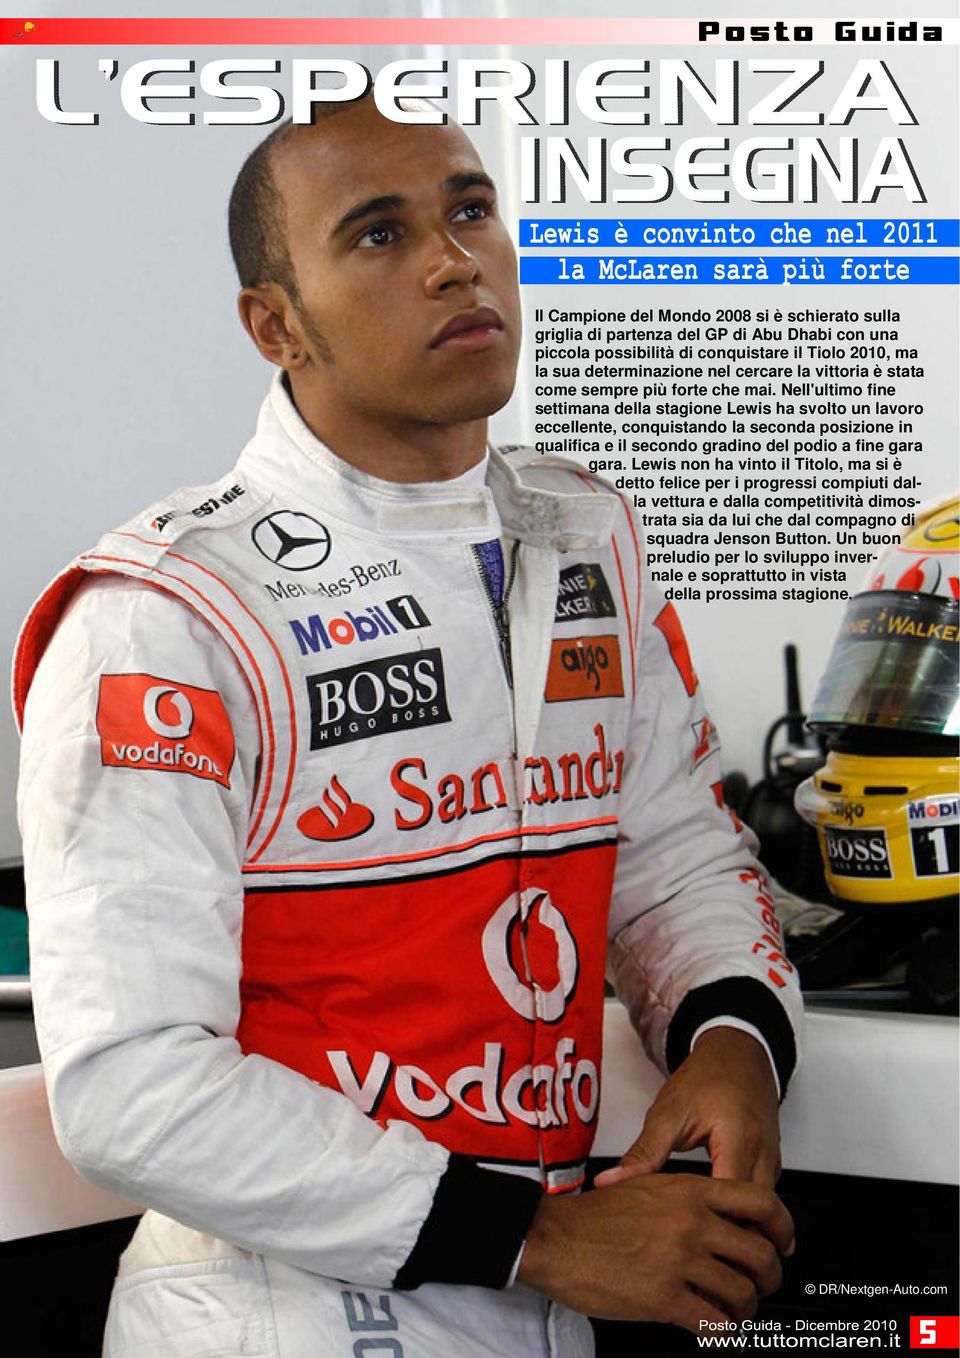 Nell'ultimo fine settimana della stagione Lewis ha svolto un lavoro eccellente, conquistando la seconda posizione in qualifica e il secondo gradino del podio a fine gara gara.